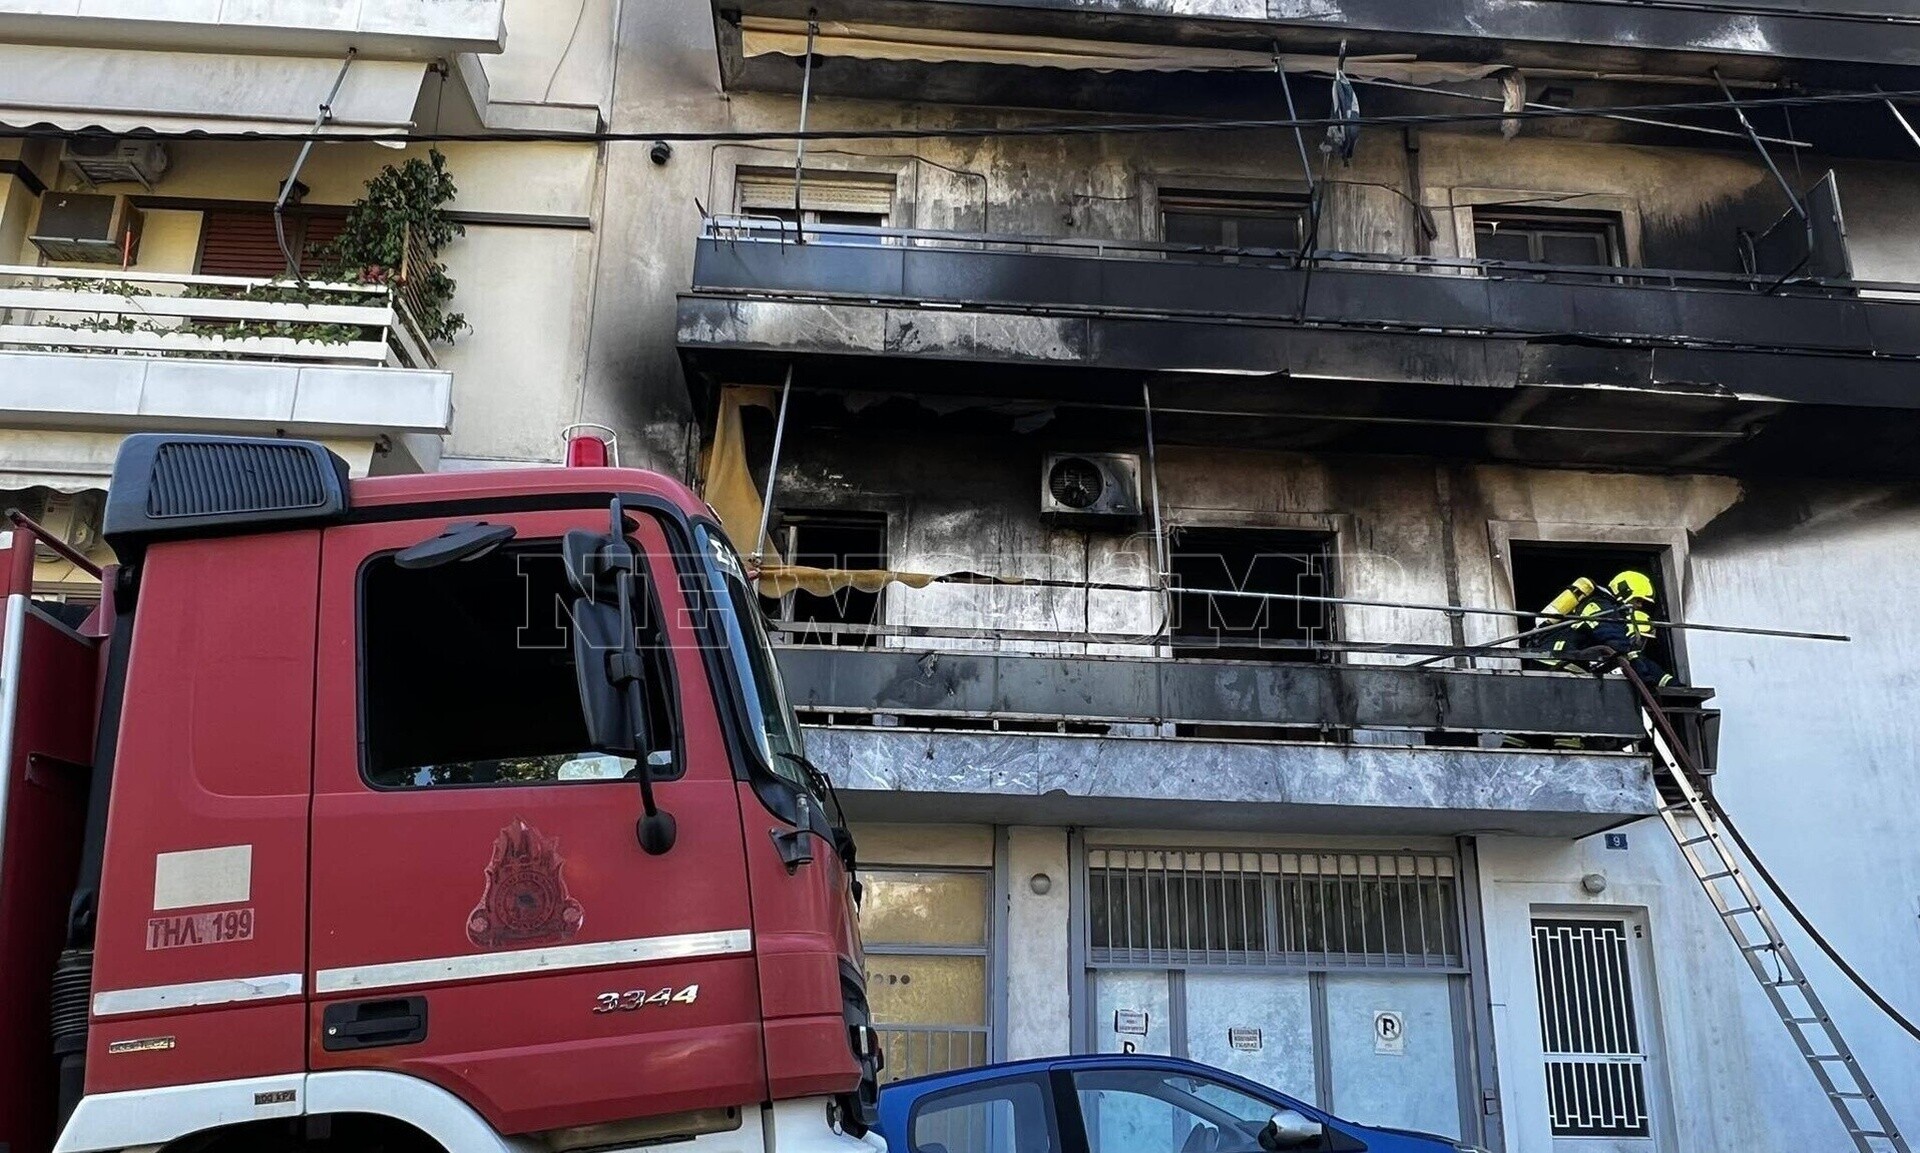 Ριζούπολη: Αναζητείται ένοικος που είχε απειλήσει ότι θα έβαζε φωτιά